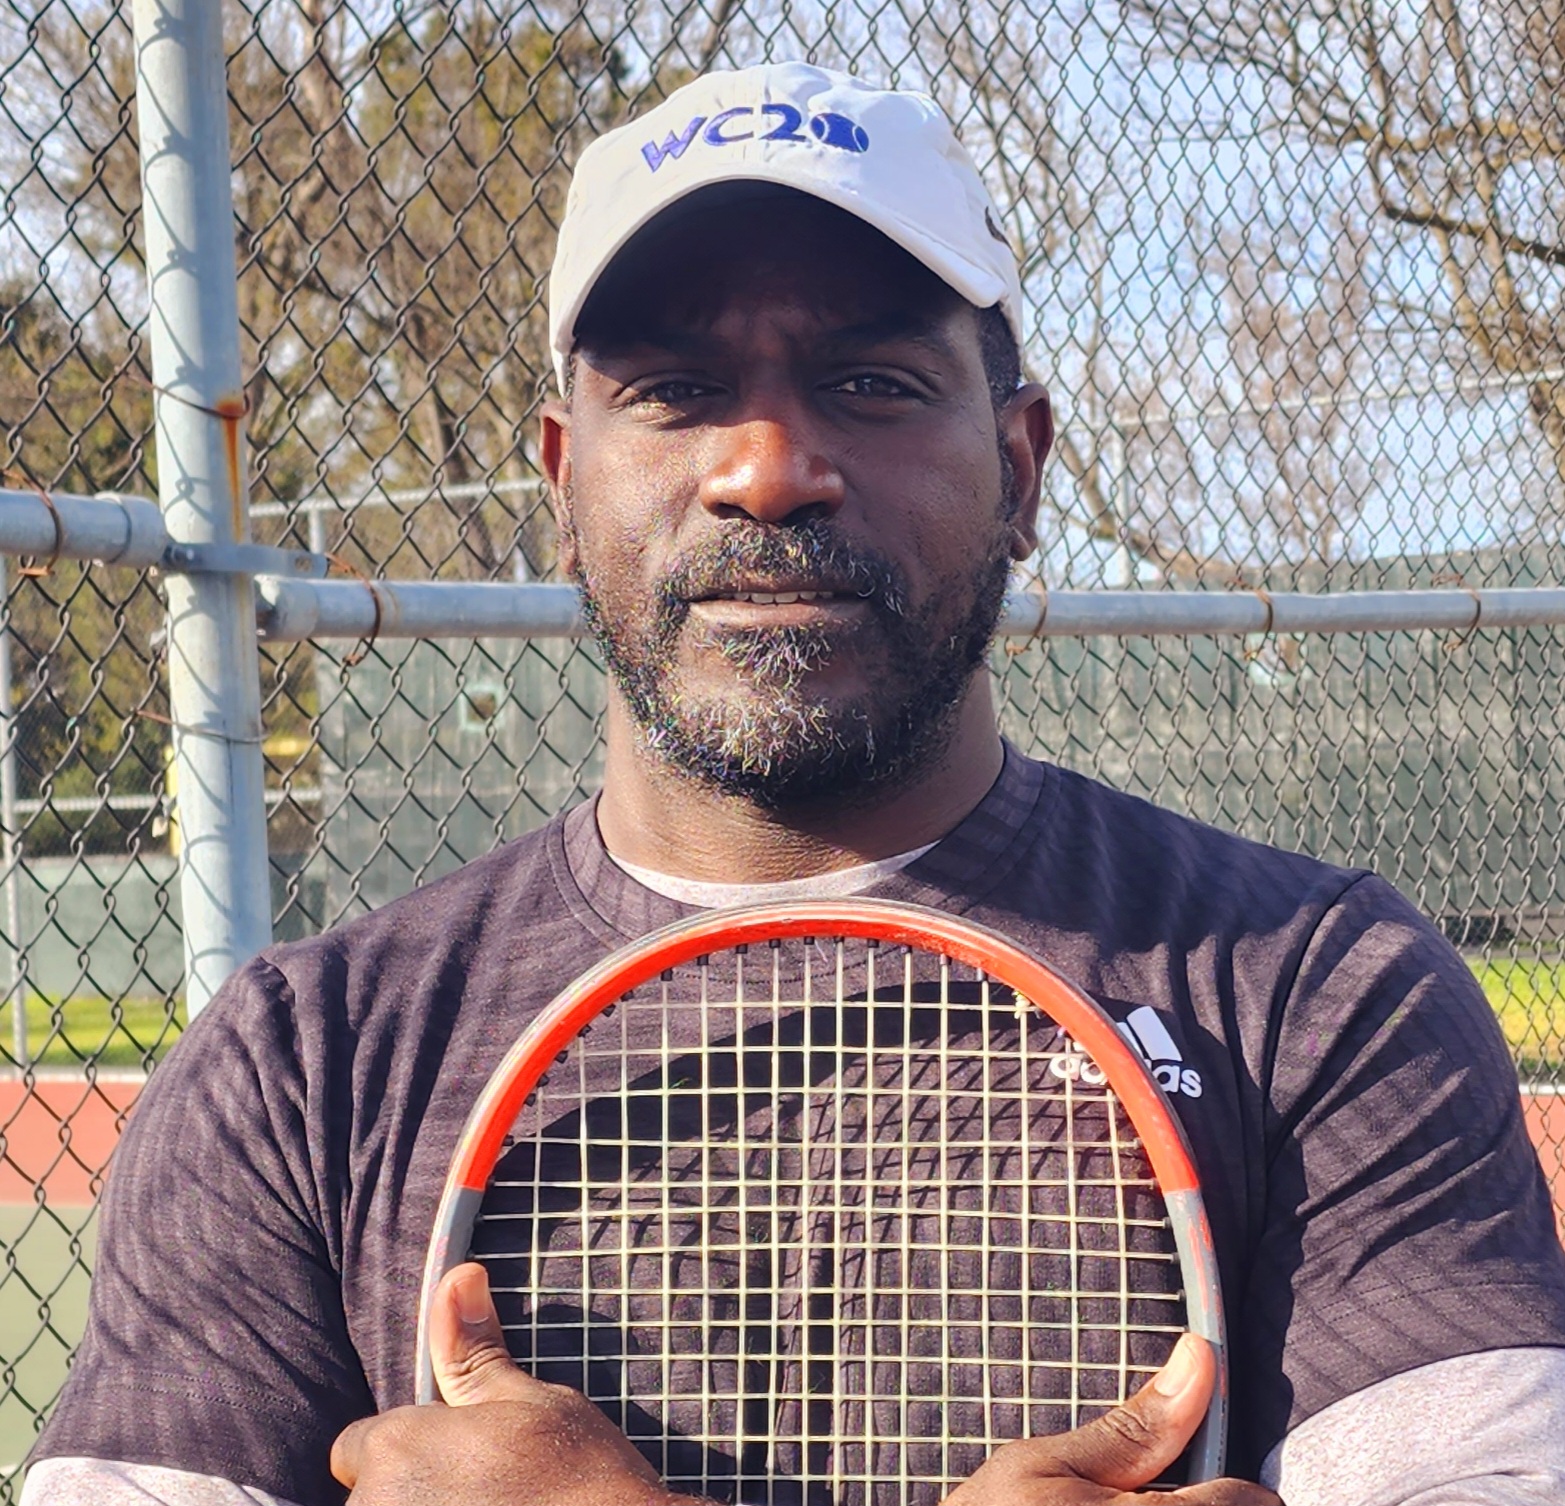 Javon M. teaches tennis lessons in Mountain View, CA